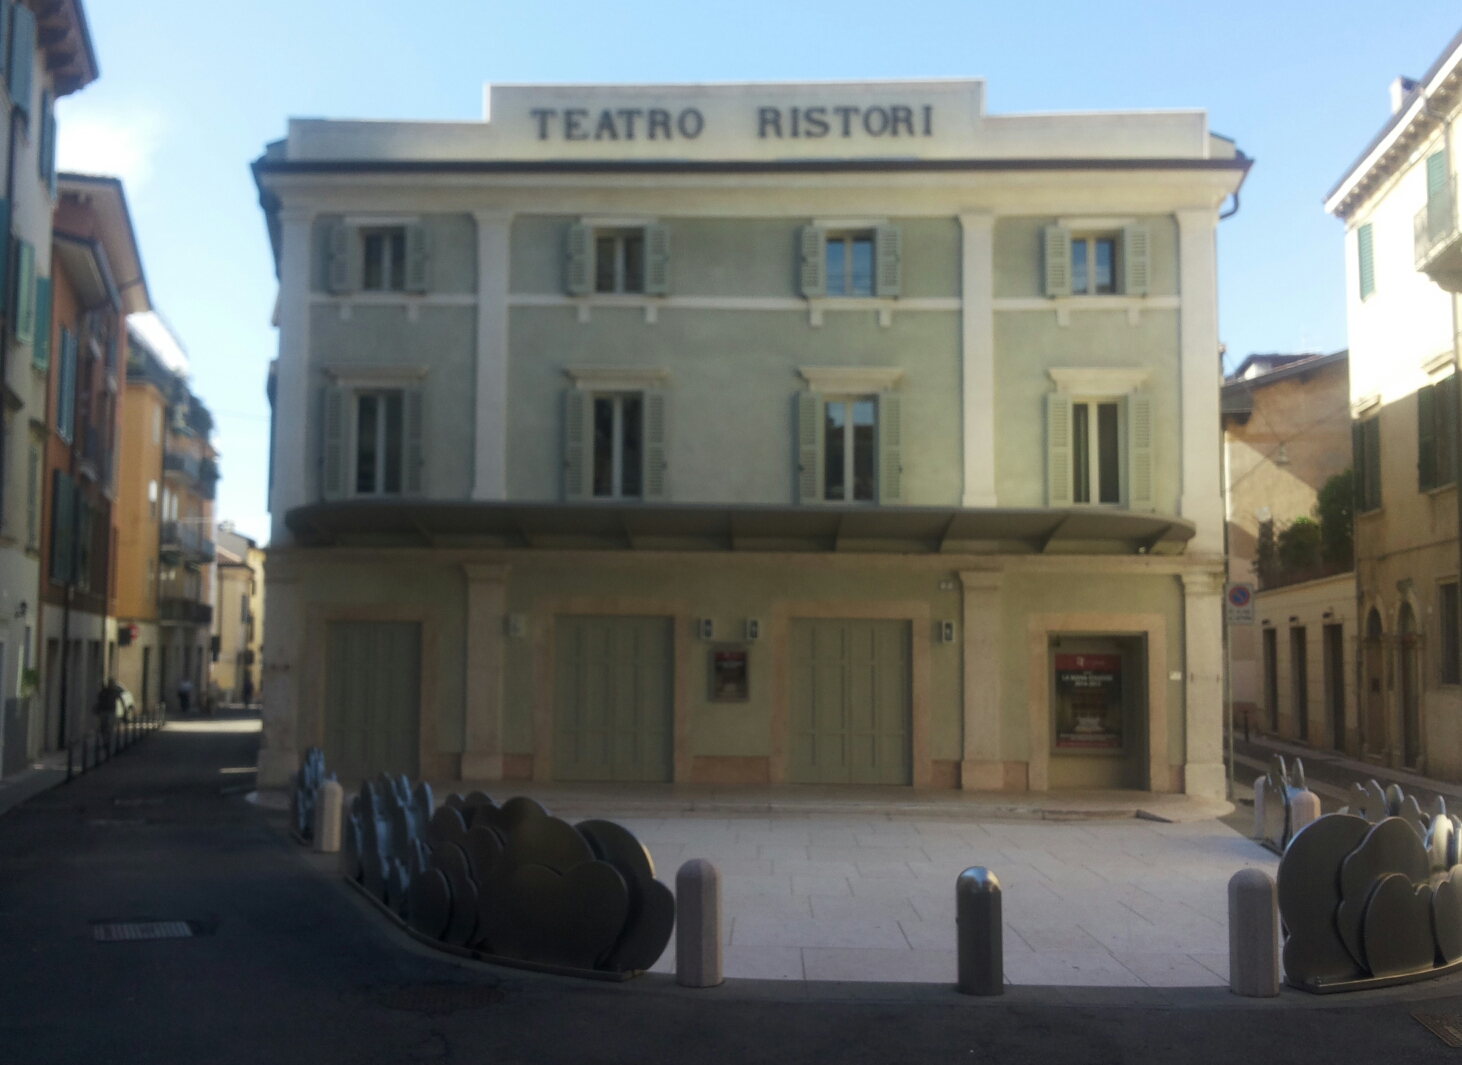 Teatro Ristori - Wikipedia